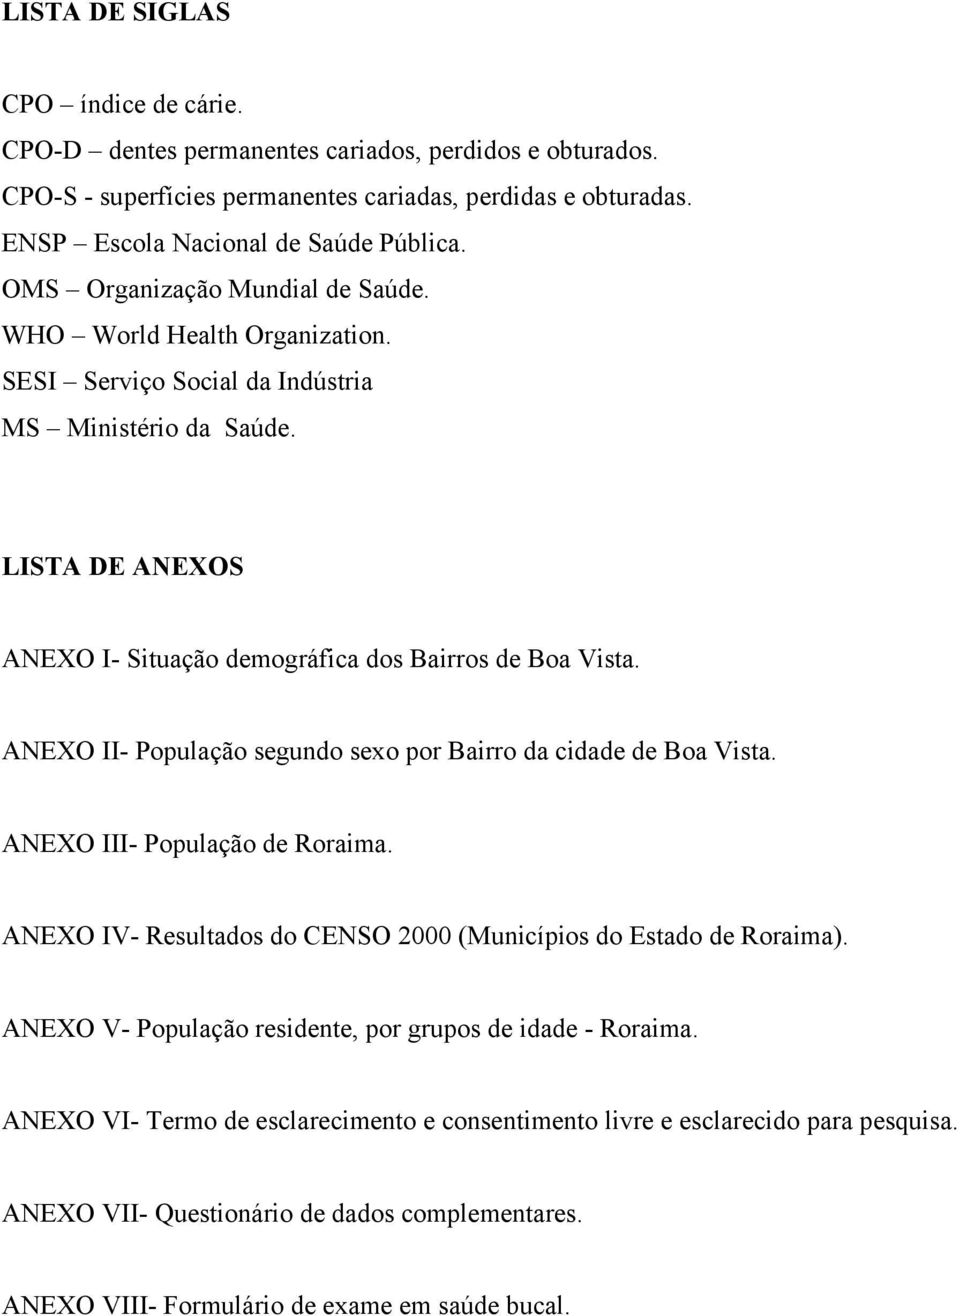 ANEXO II- População segundo sexo por Bairro da cidade de Boa Vista. ANEXO III- População de Roraima. ANEXO IV- Resultados do CENSO 2000 (Municípios do Estado de Roraima).